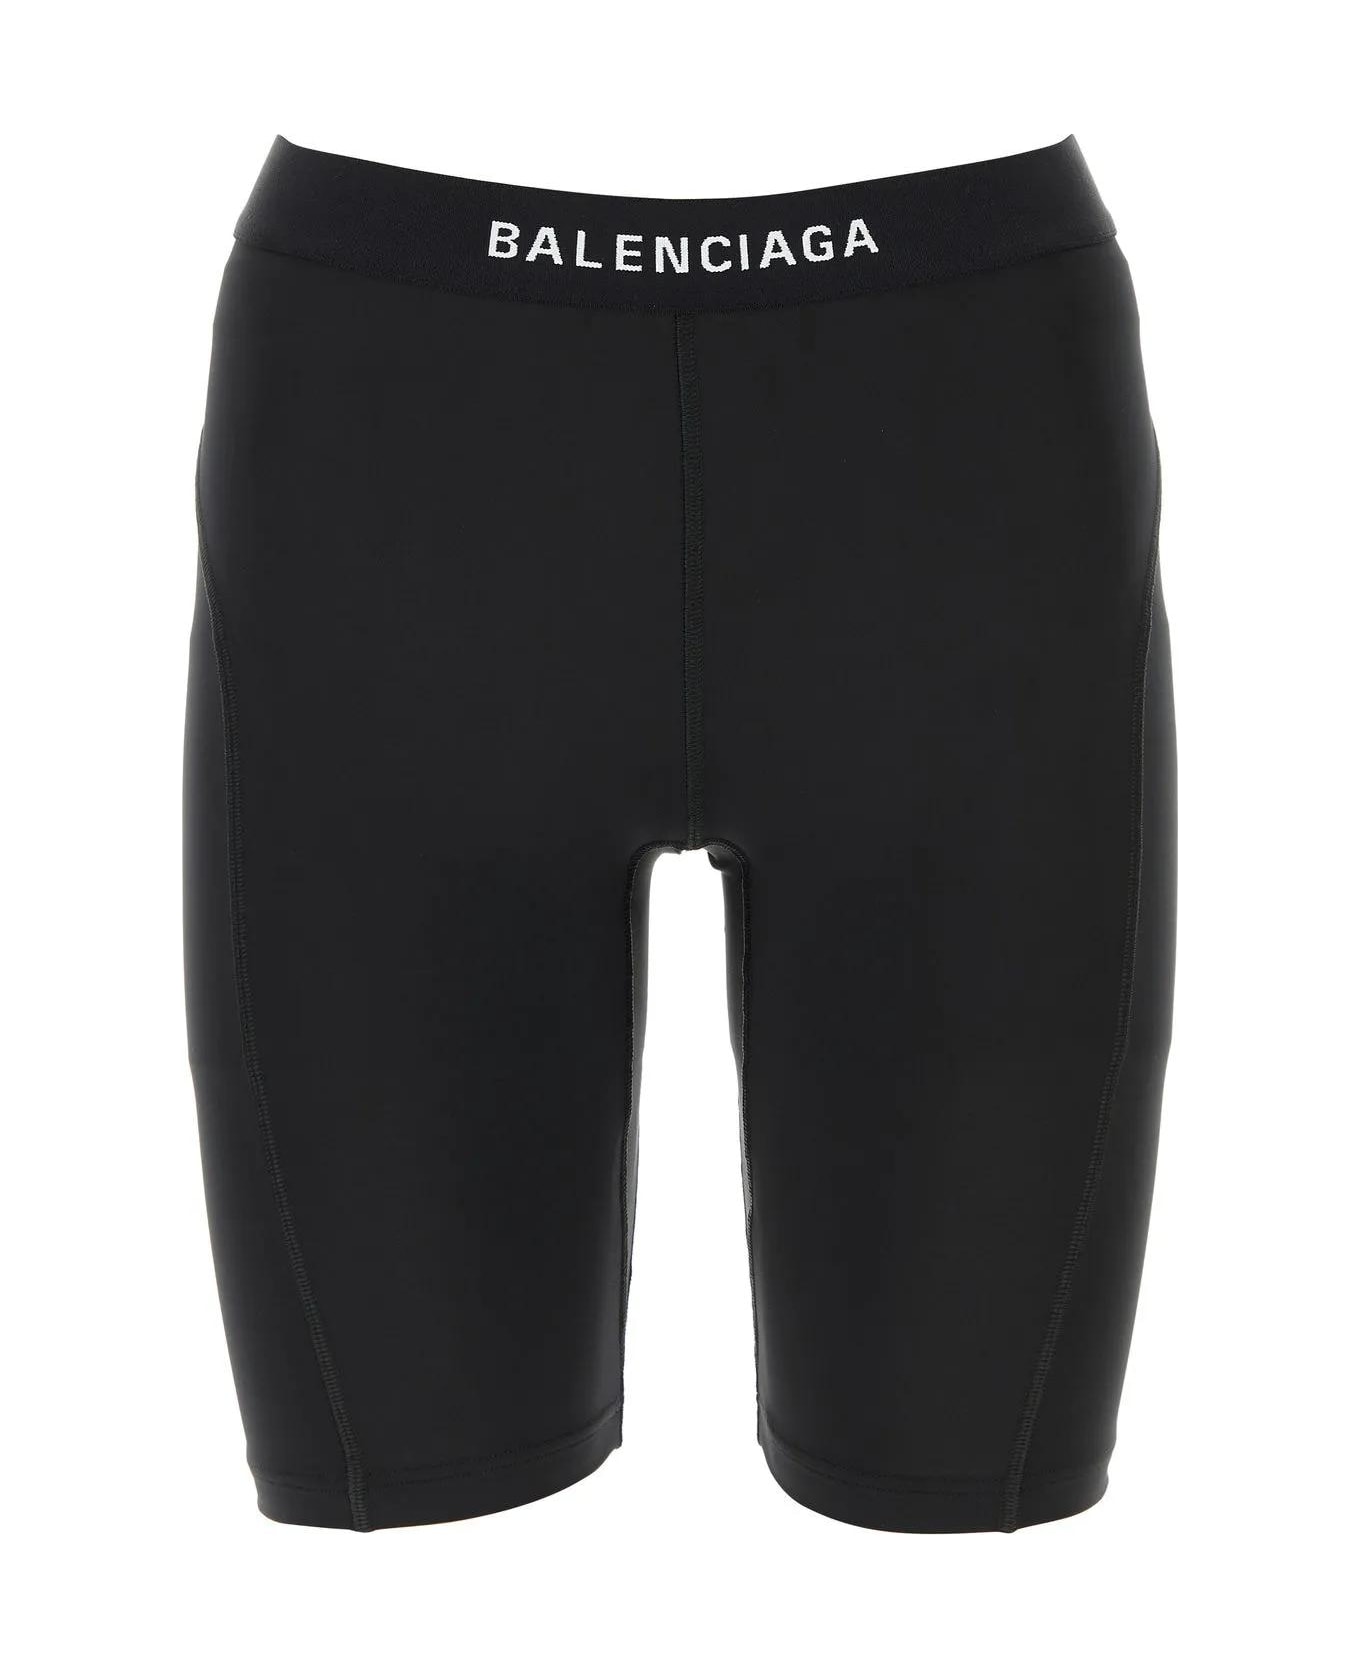 Balenciaga Athletic Cycling Shorts - BLACK ショーツ